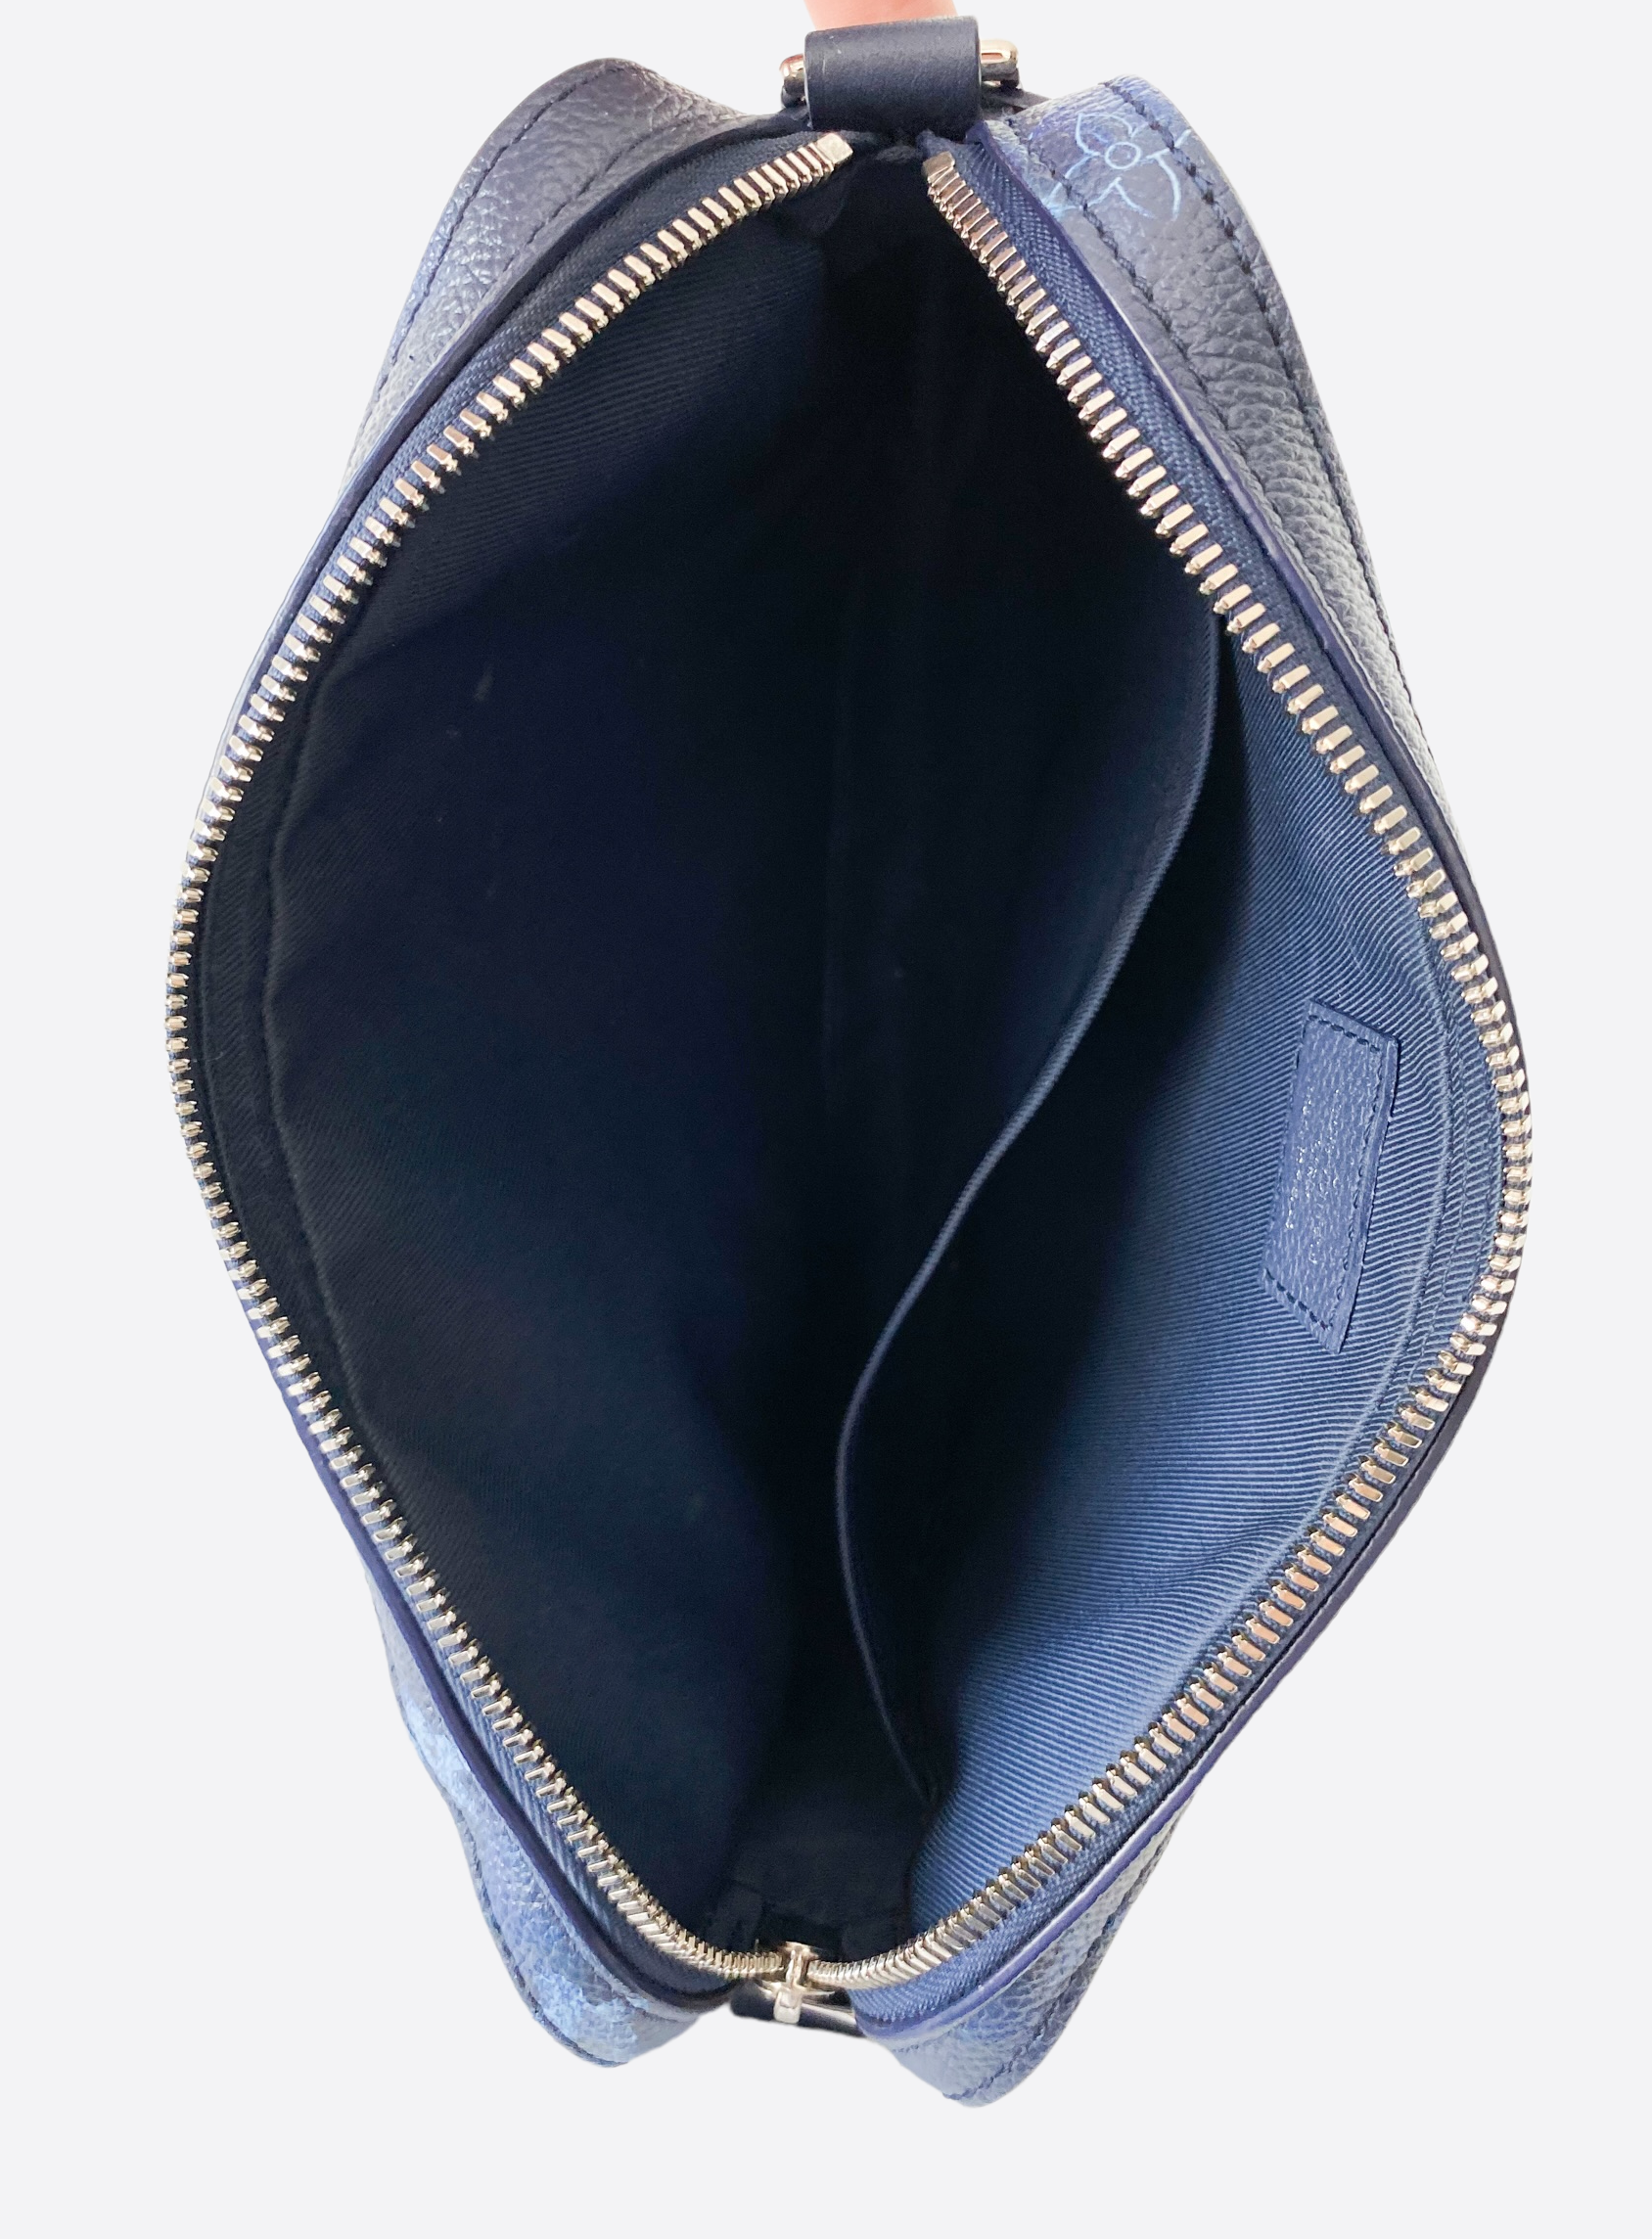 Louis Vuitton - Trio Messenger Bag - Leather - Navy River Blue - Men - Luxury